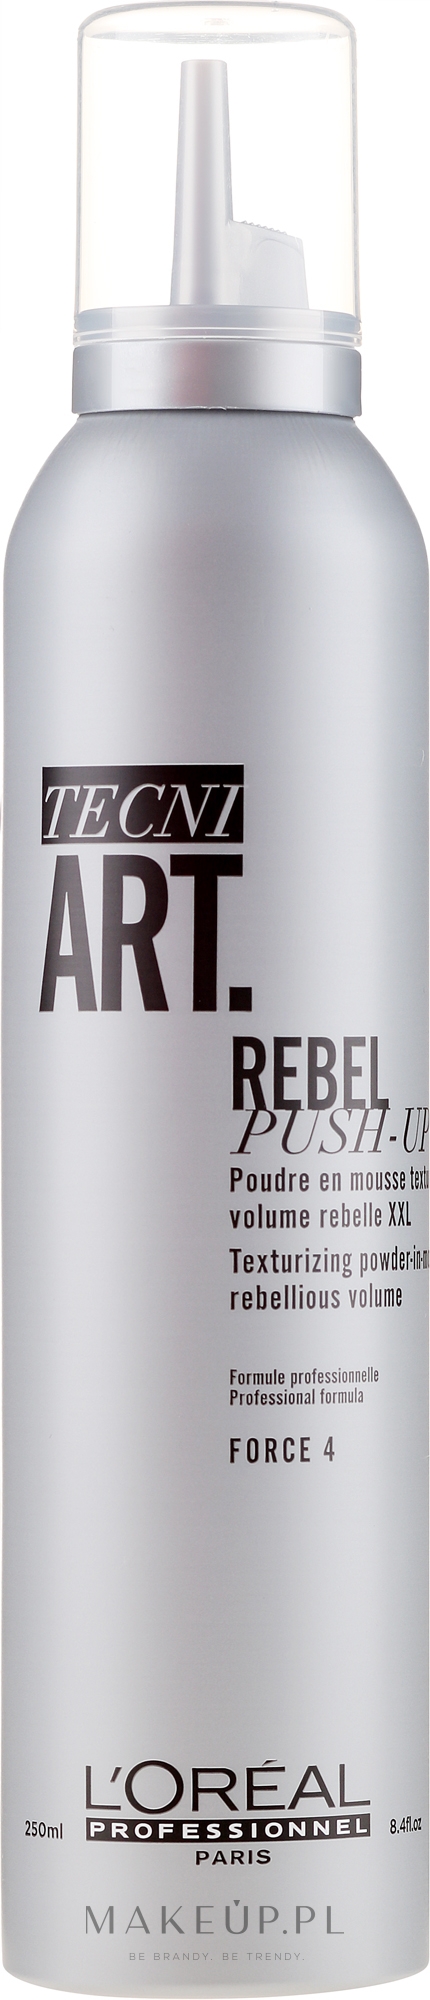 Pudrowy mus do tworzenia tekstur i ultraobjętości włosów - L'Oreal Professionnel Tecni.Art Rebel Push-Up Texturizing Powder-In-Mousse — Zdjęcie 250 ml